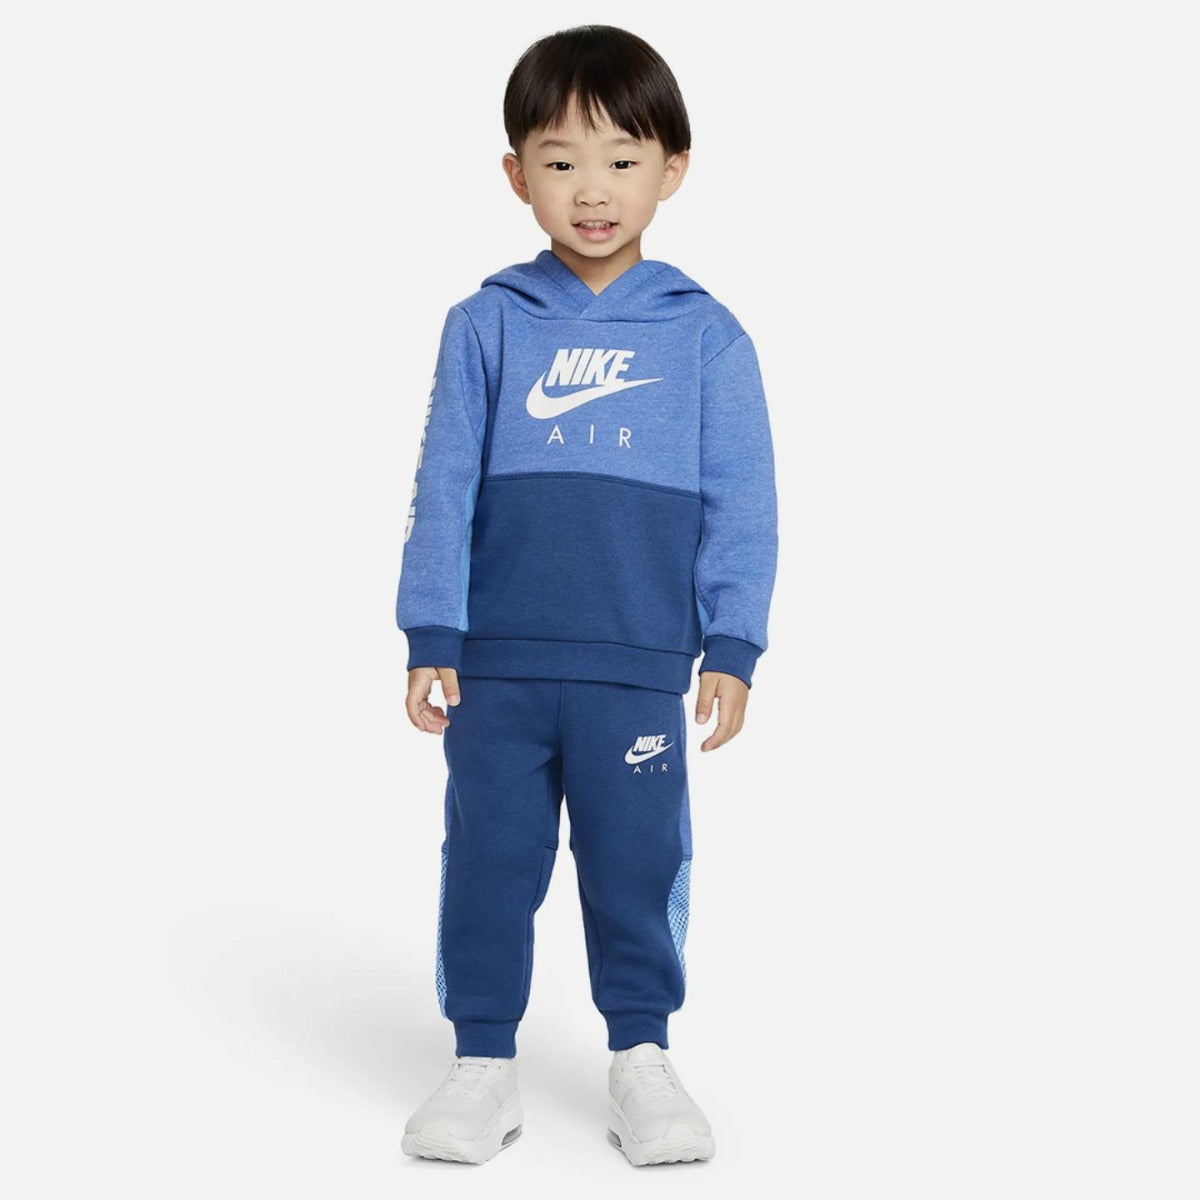 Chandal Nike Air Niño Azul